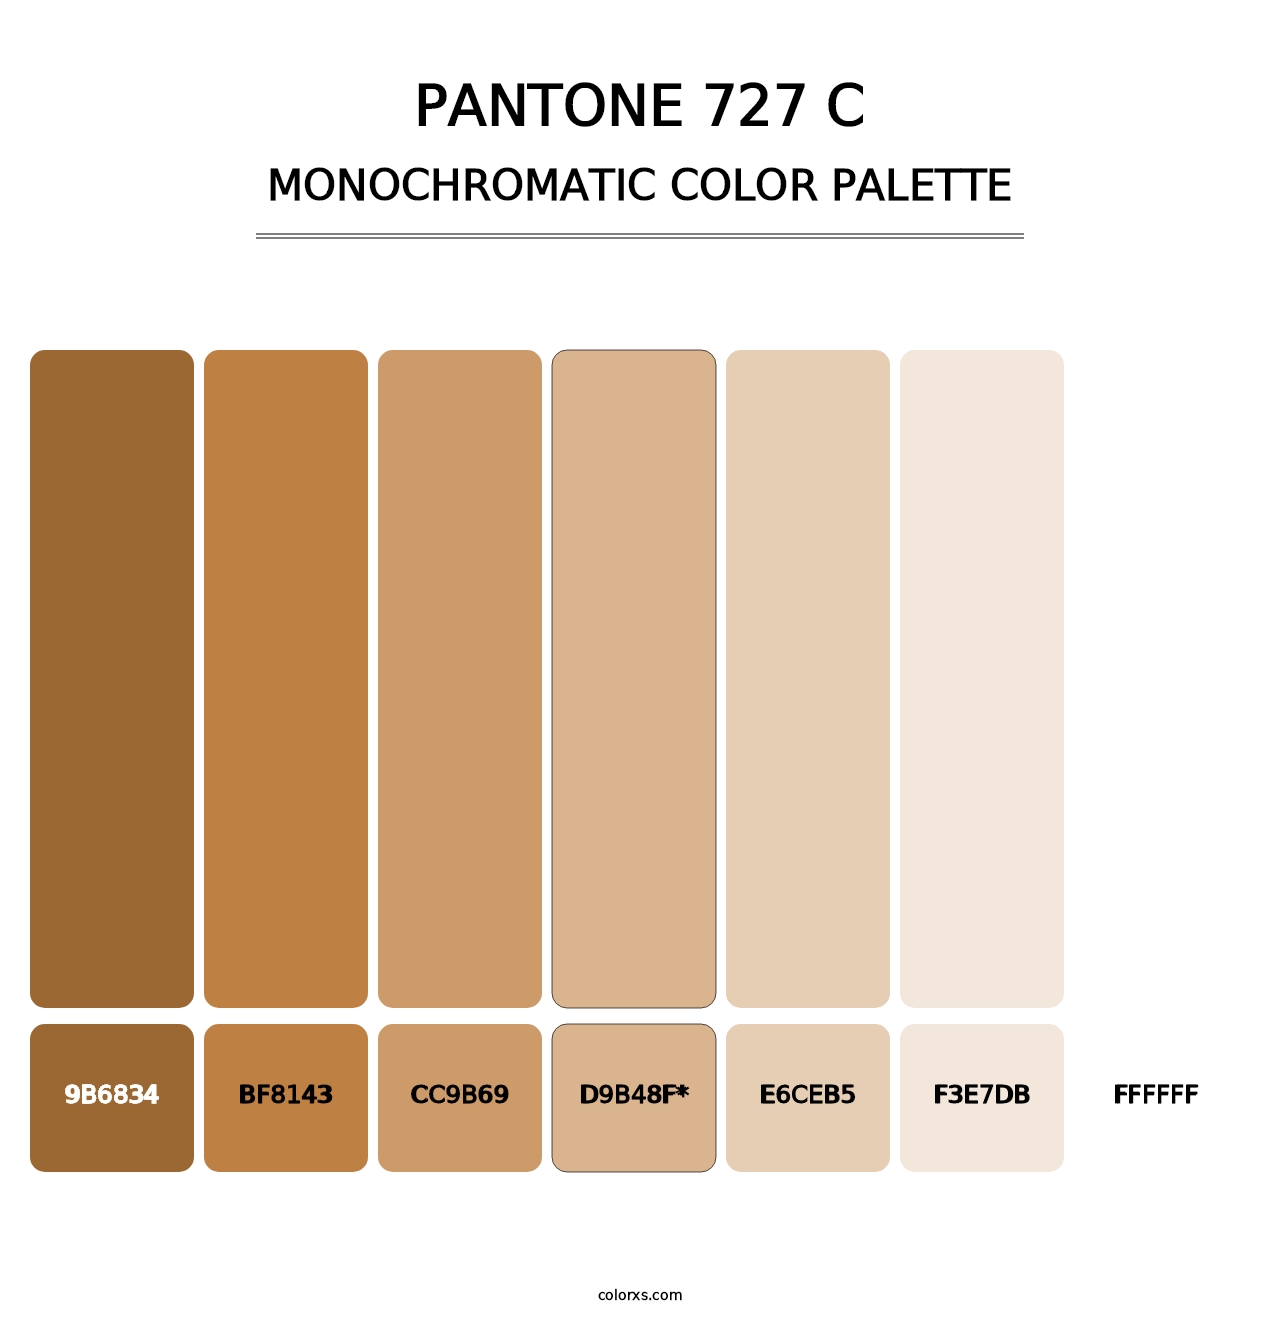 PANTONE 727 C - Monochromatic Color Palette